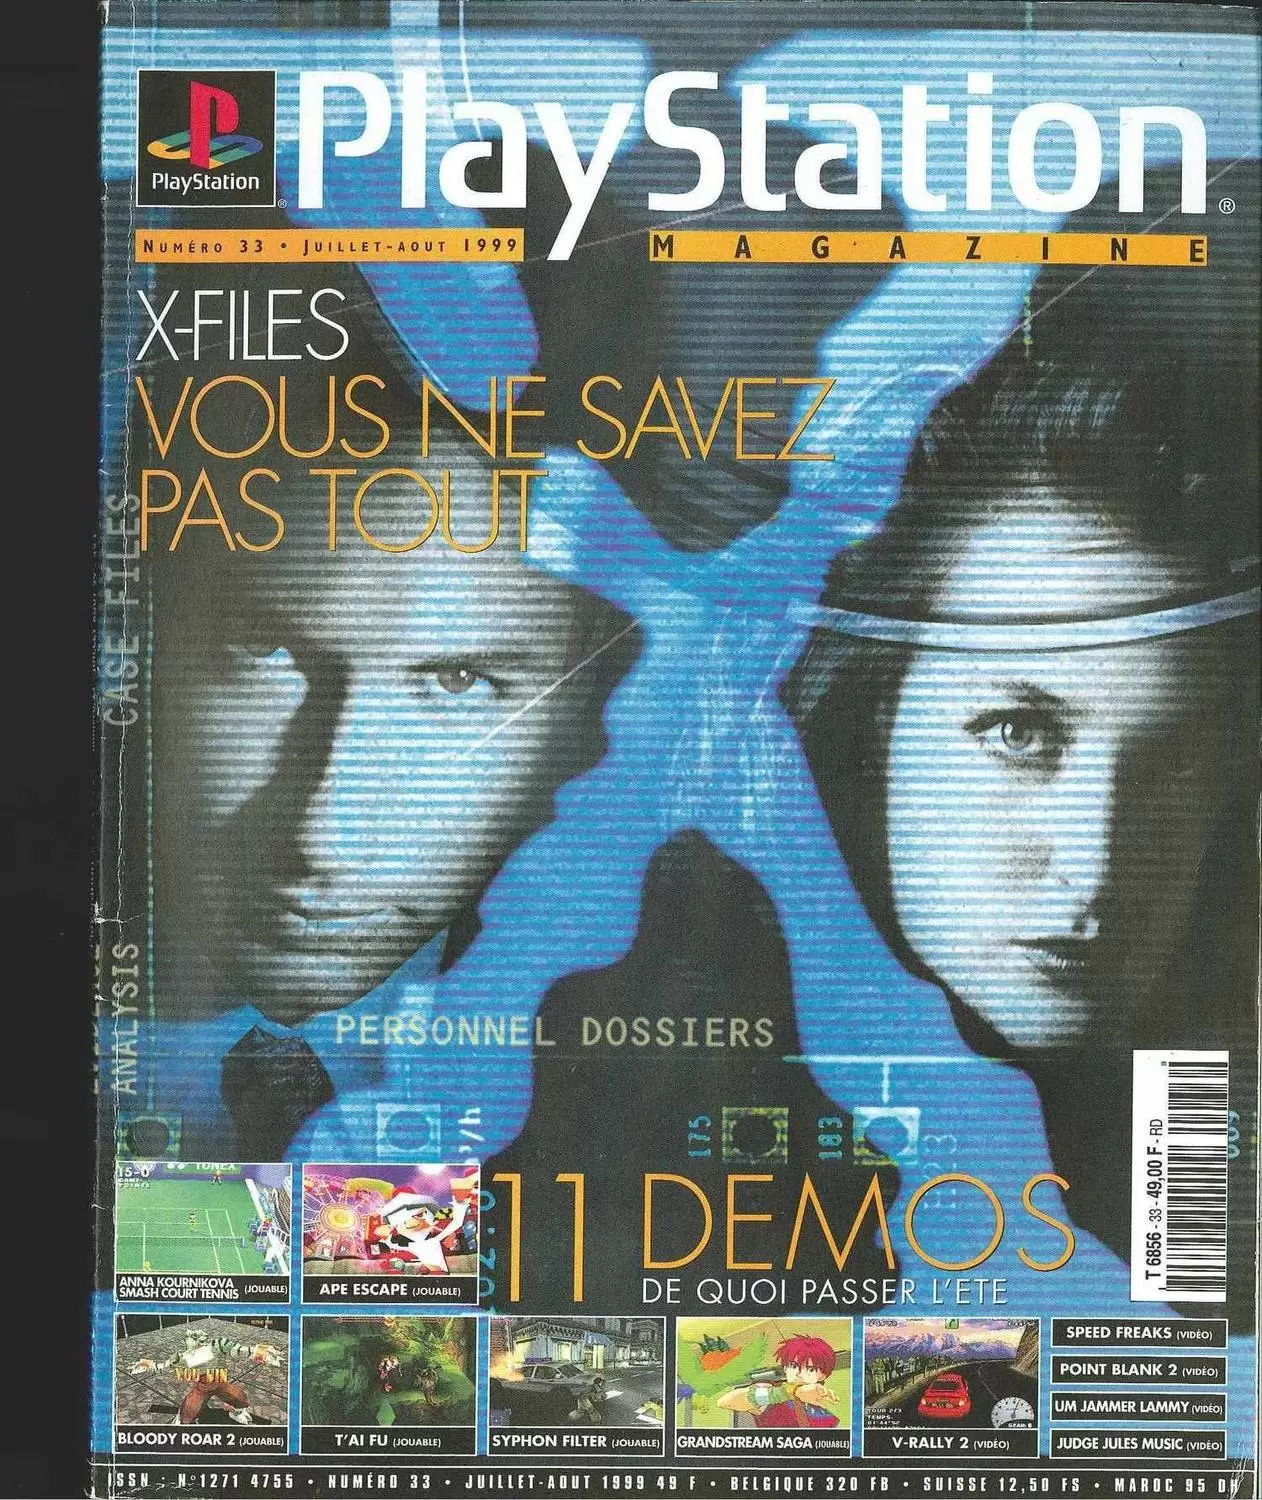 Playstation Magazine - Playstation Magazine #33